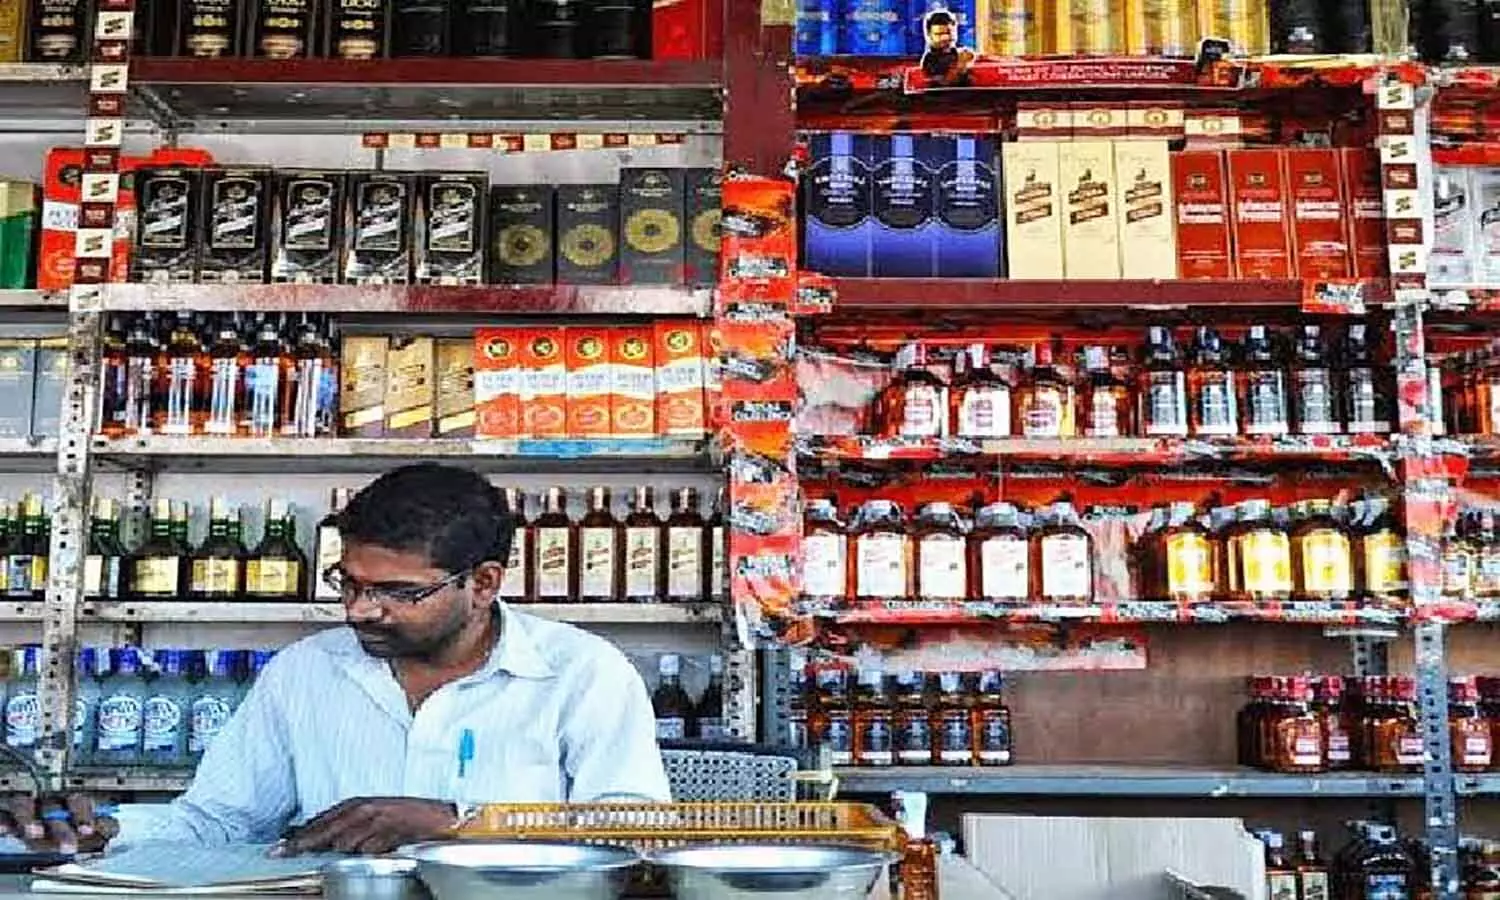 एमपी के जबलपुर में शराब ठेकेदारों पर ईओडब्ल्यू का शिकंजाः अधिक दाम पर शराब बेचना पड़ा भारी, 5 दुकानों पर एफआईआर दर्ज